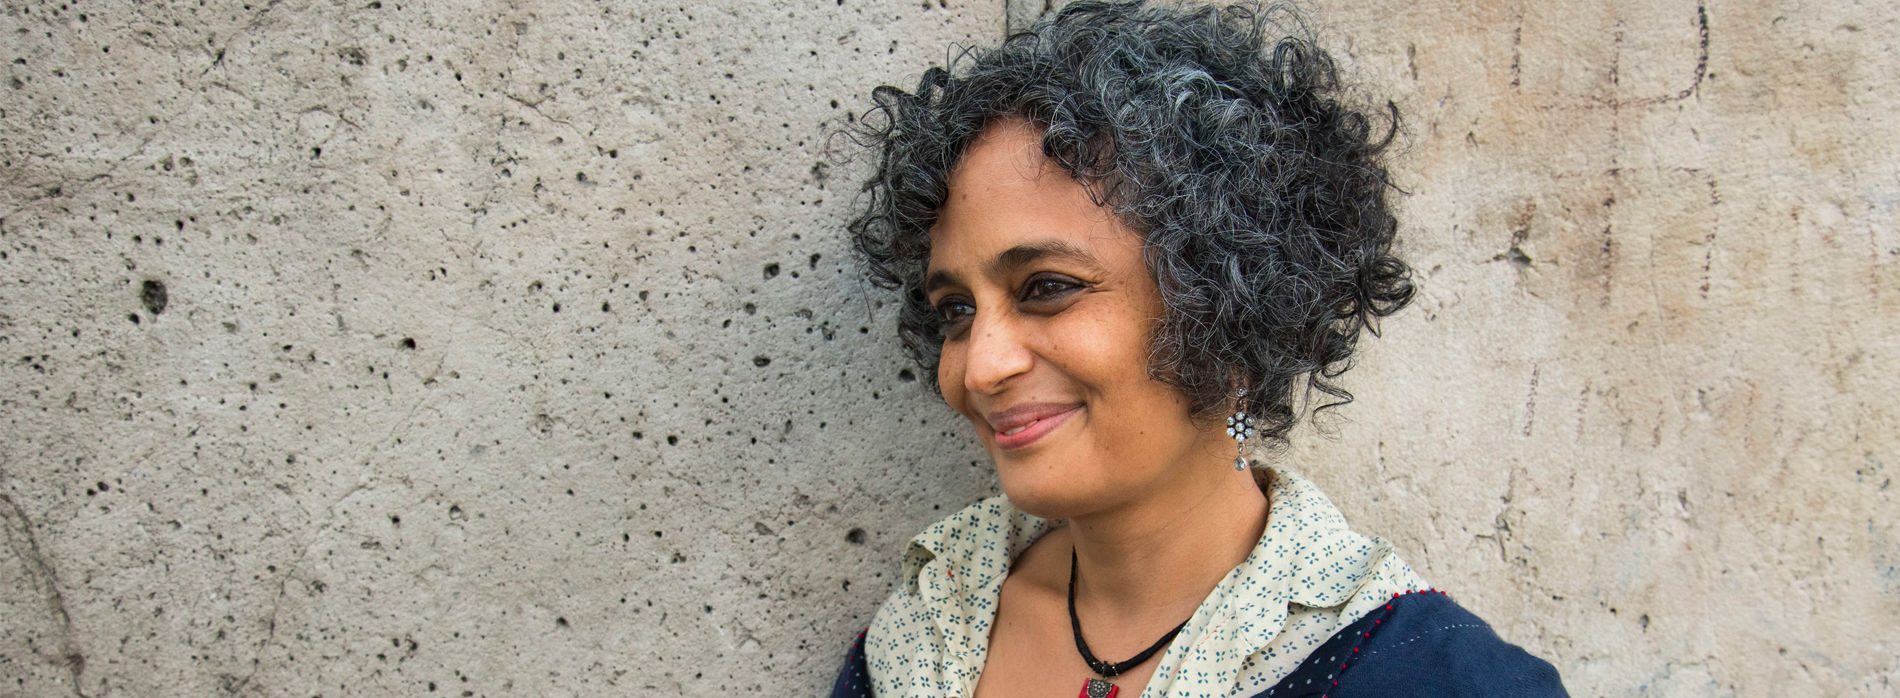 L'écrivaine indienne Arundhati Roy. (Source : Grazia)